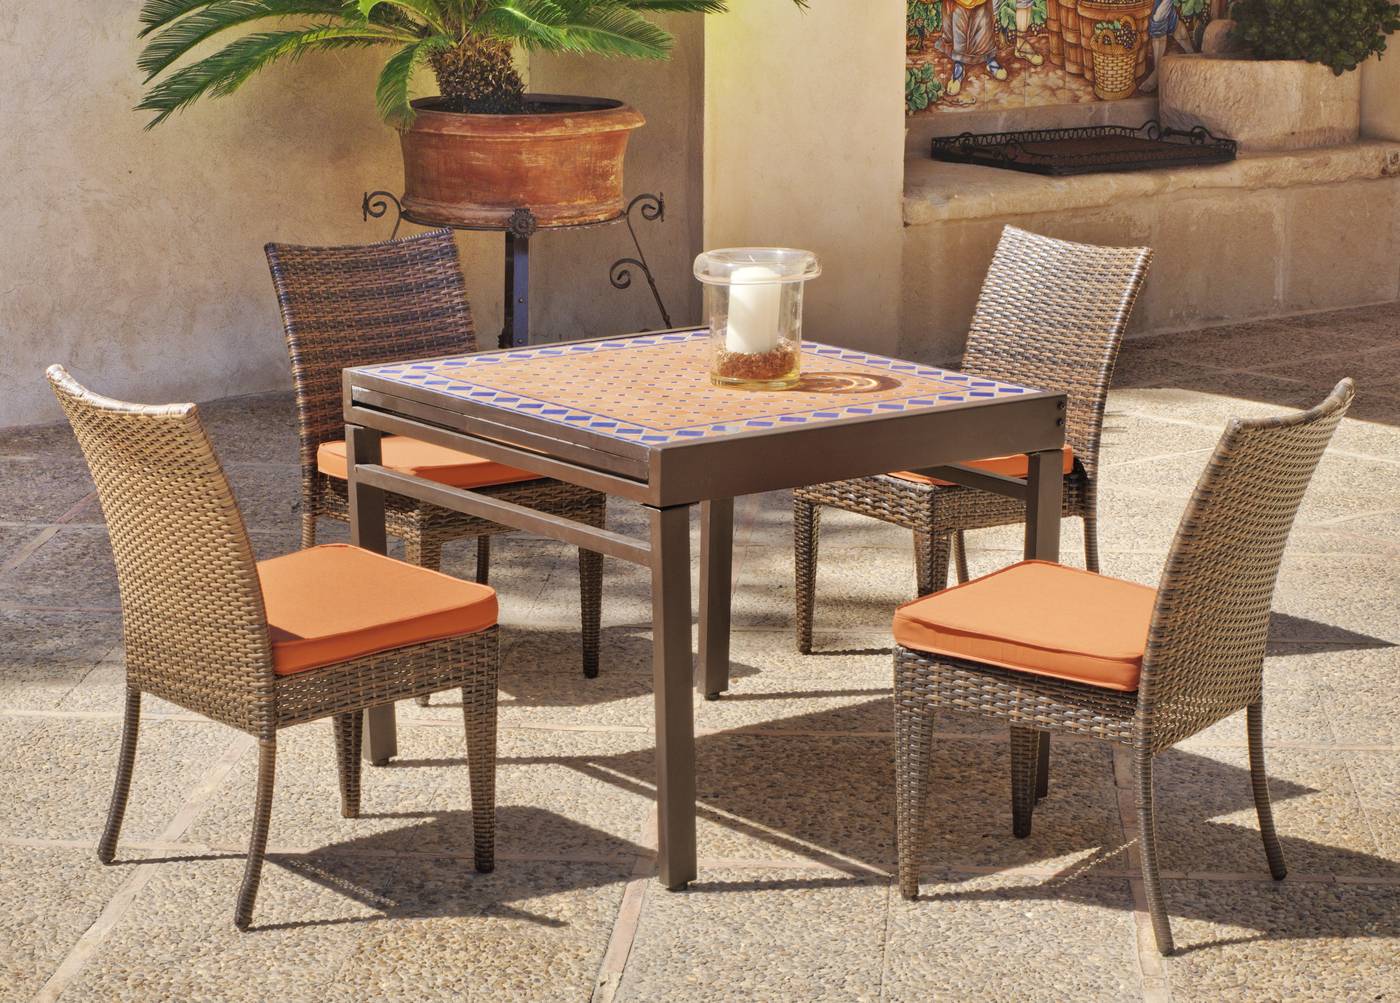 Set Mosaico Corinto-Marzia - Conjunto mosaico para jardín: mesa extensible de acero forjado con tablero mosaico + 6 sillas de ratán sintético con cojines